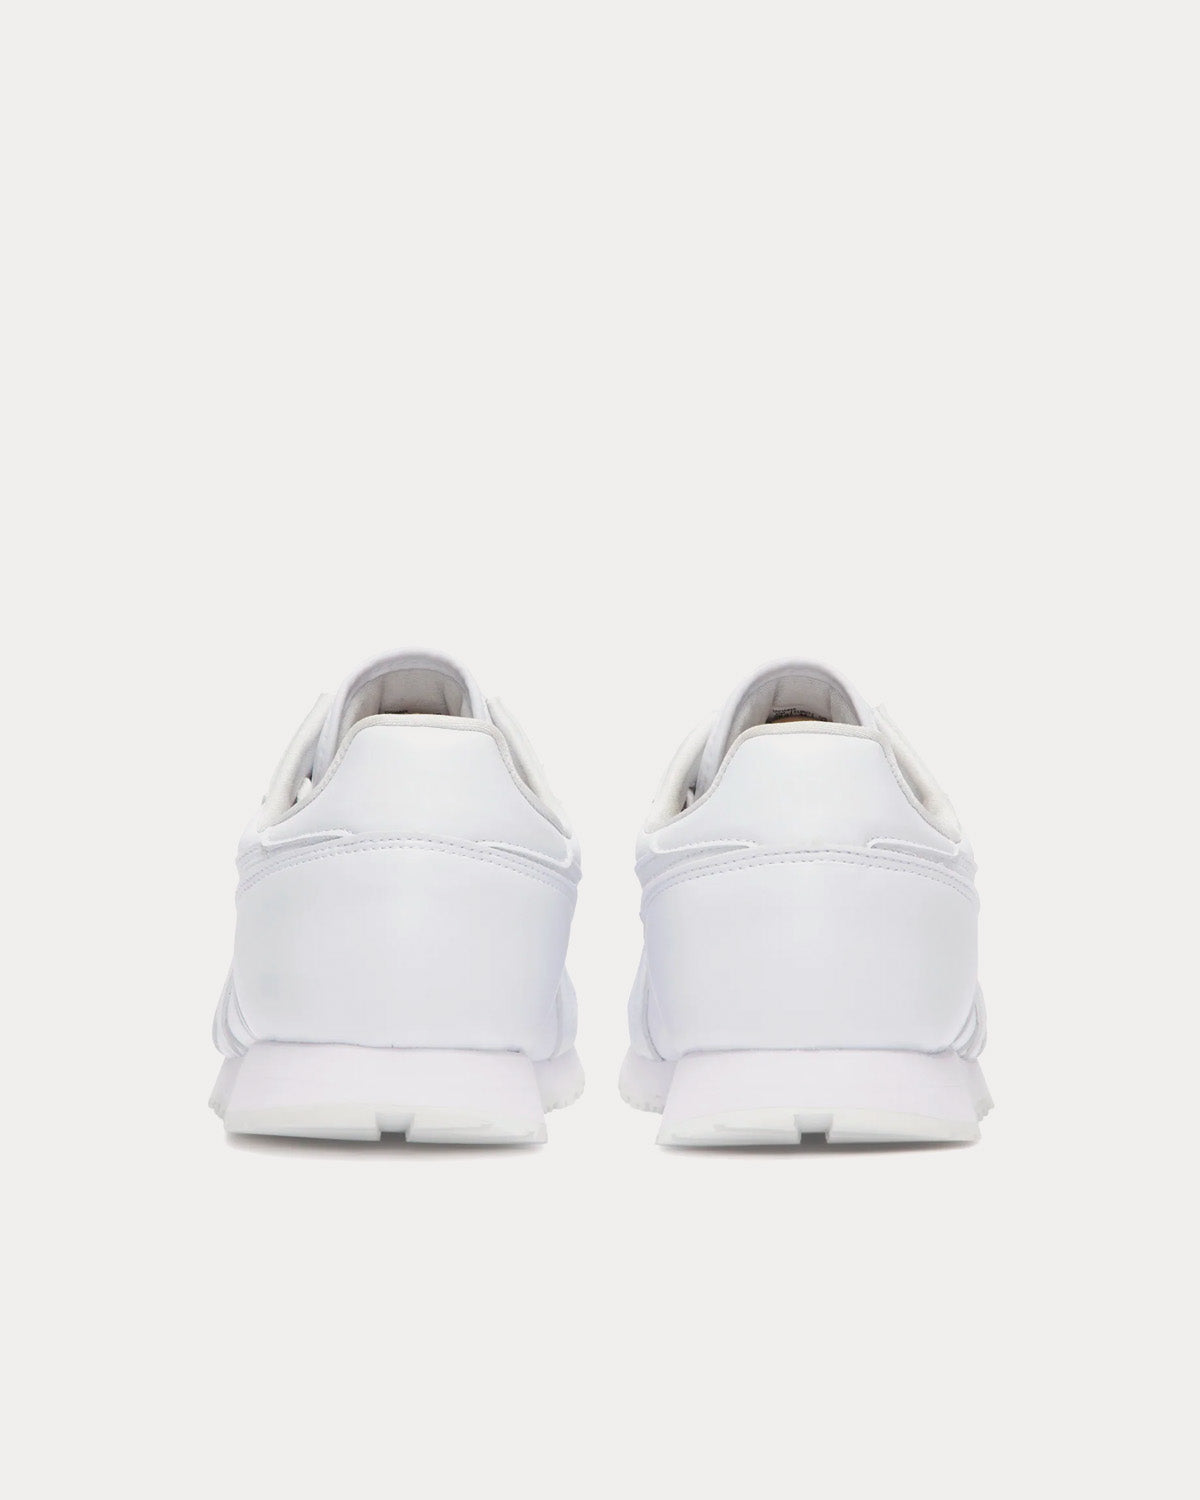 Asics x CDG Shirt - OC Runner White Low Top Sneakers